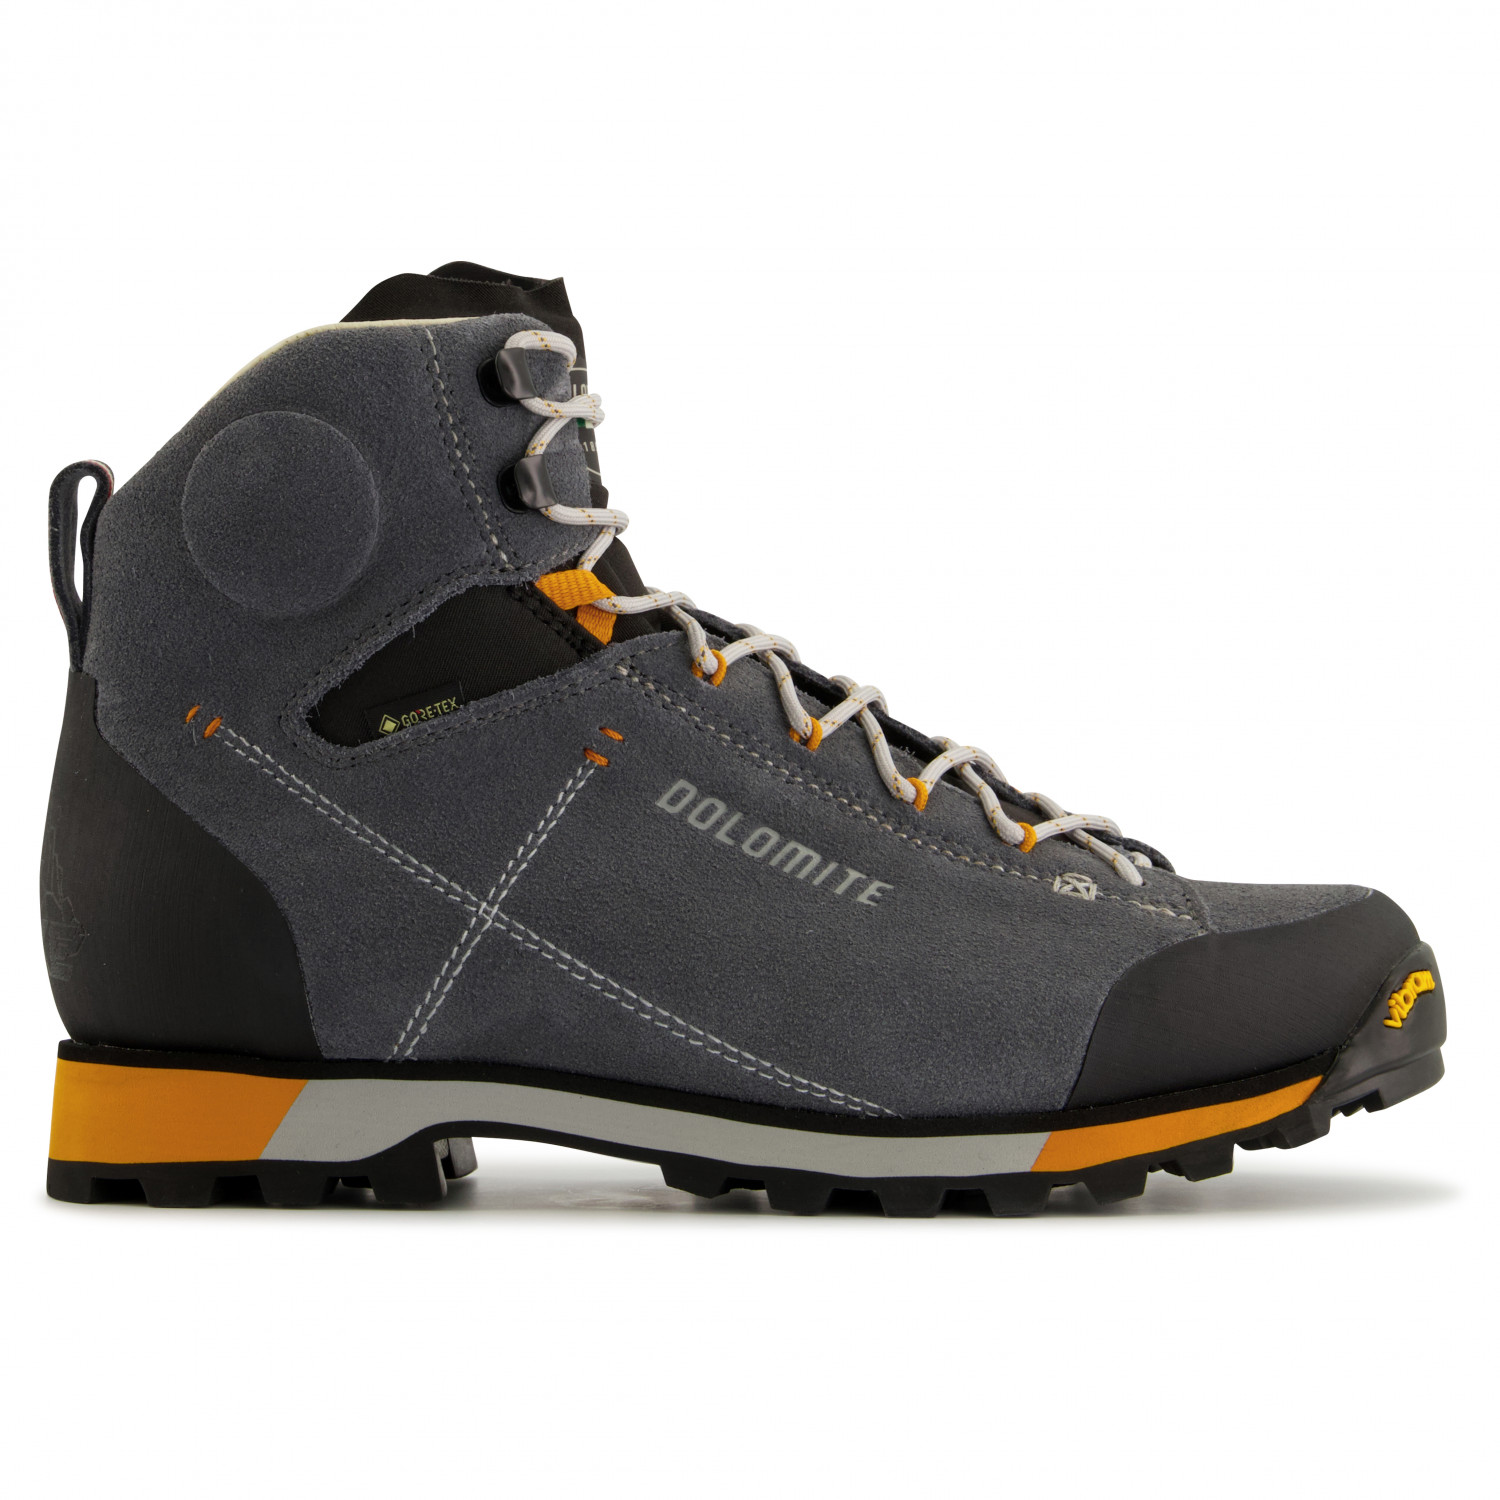 Ботинки для прогулки Dolomite 54 Hike Evo GTX, цвет Gunmetal Grey